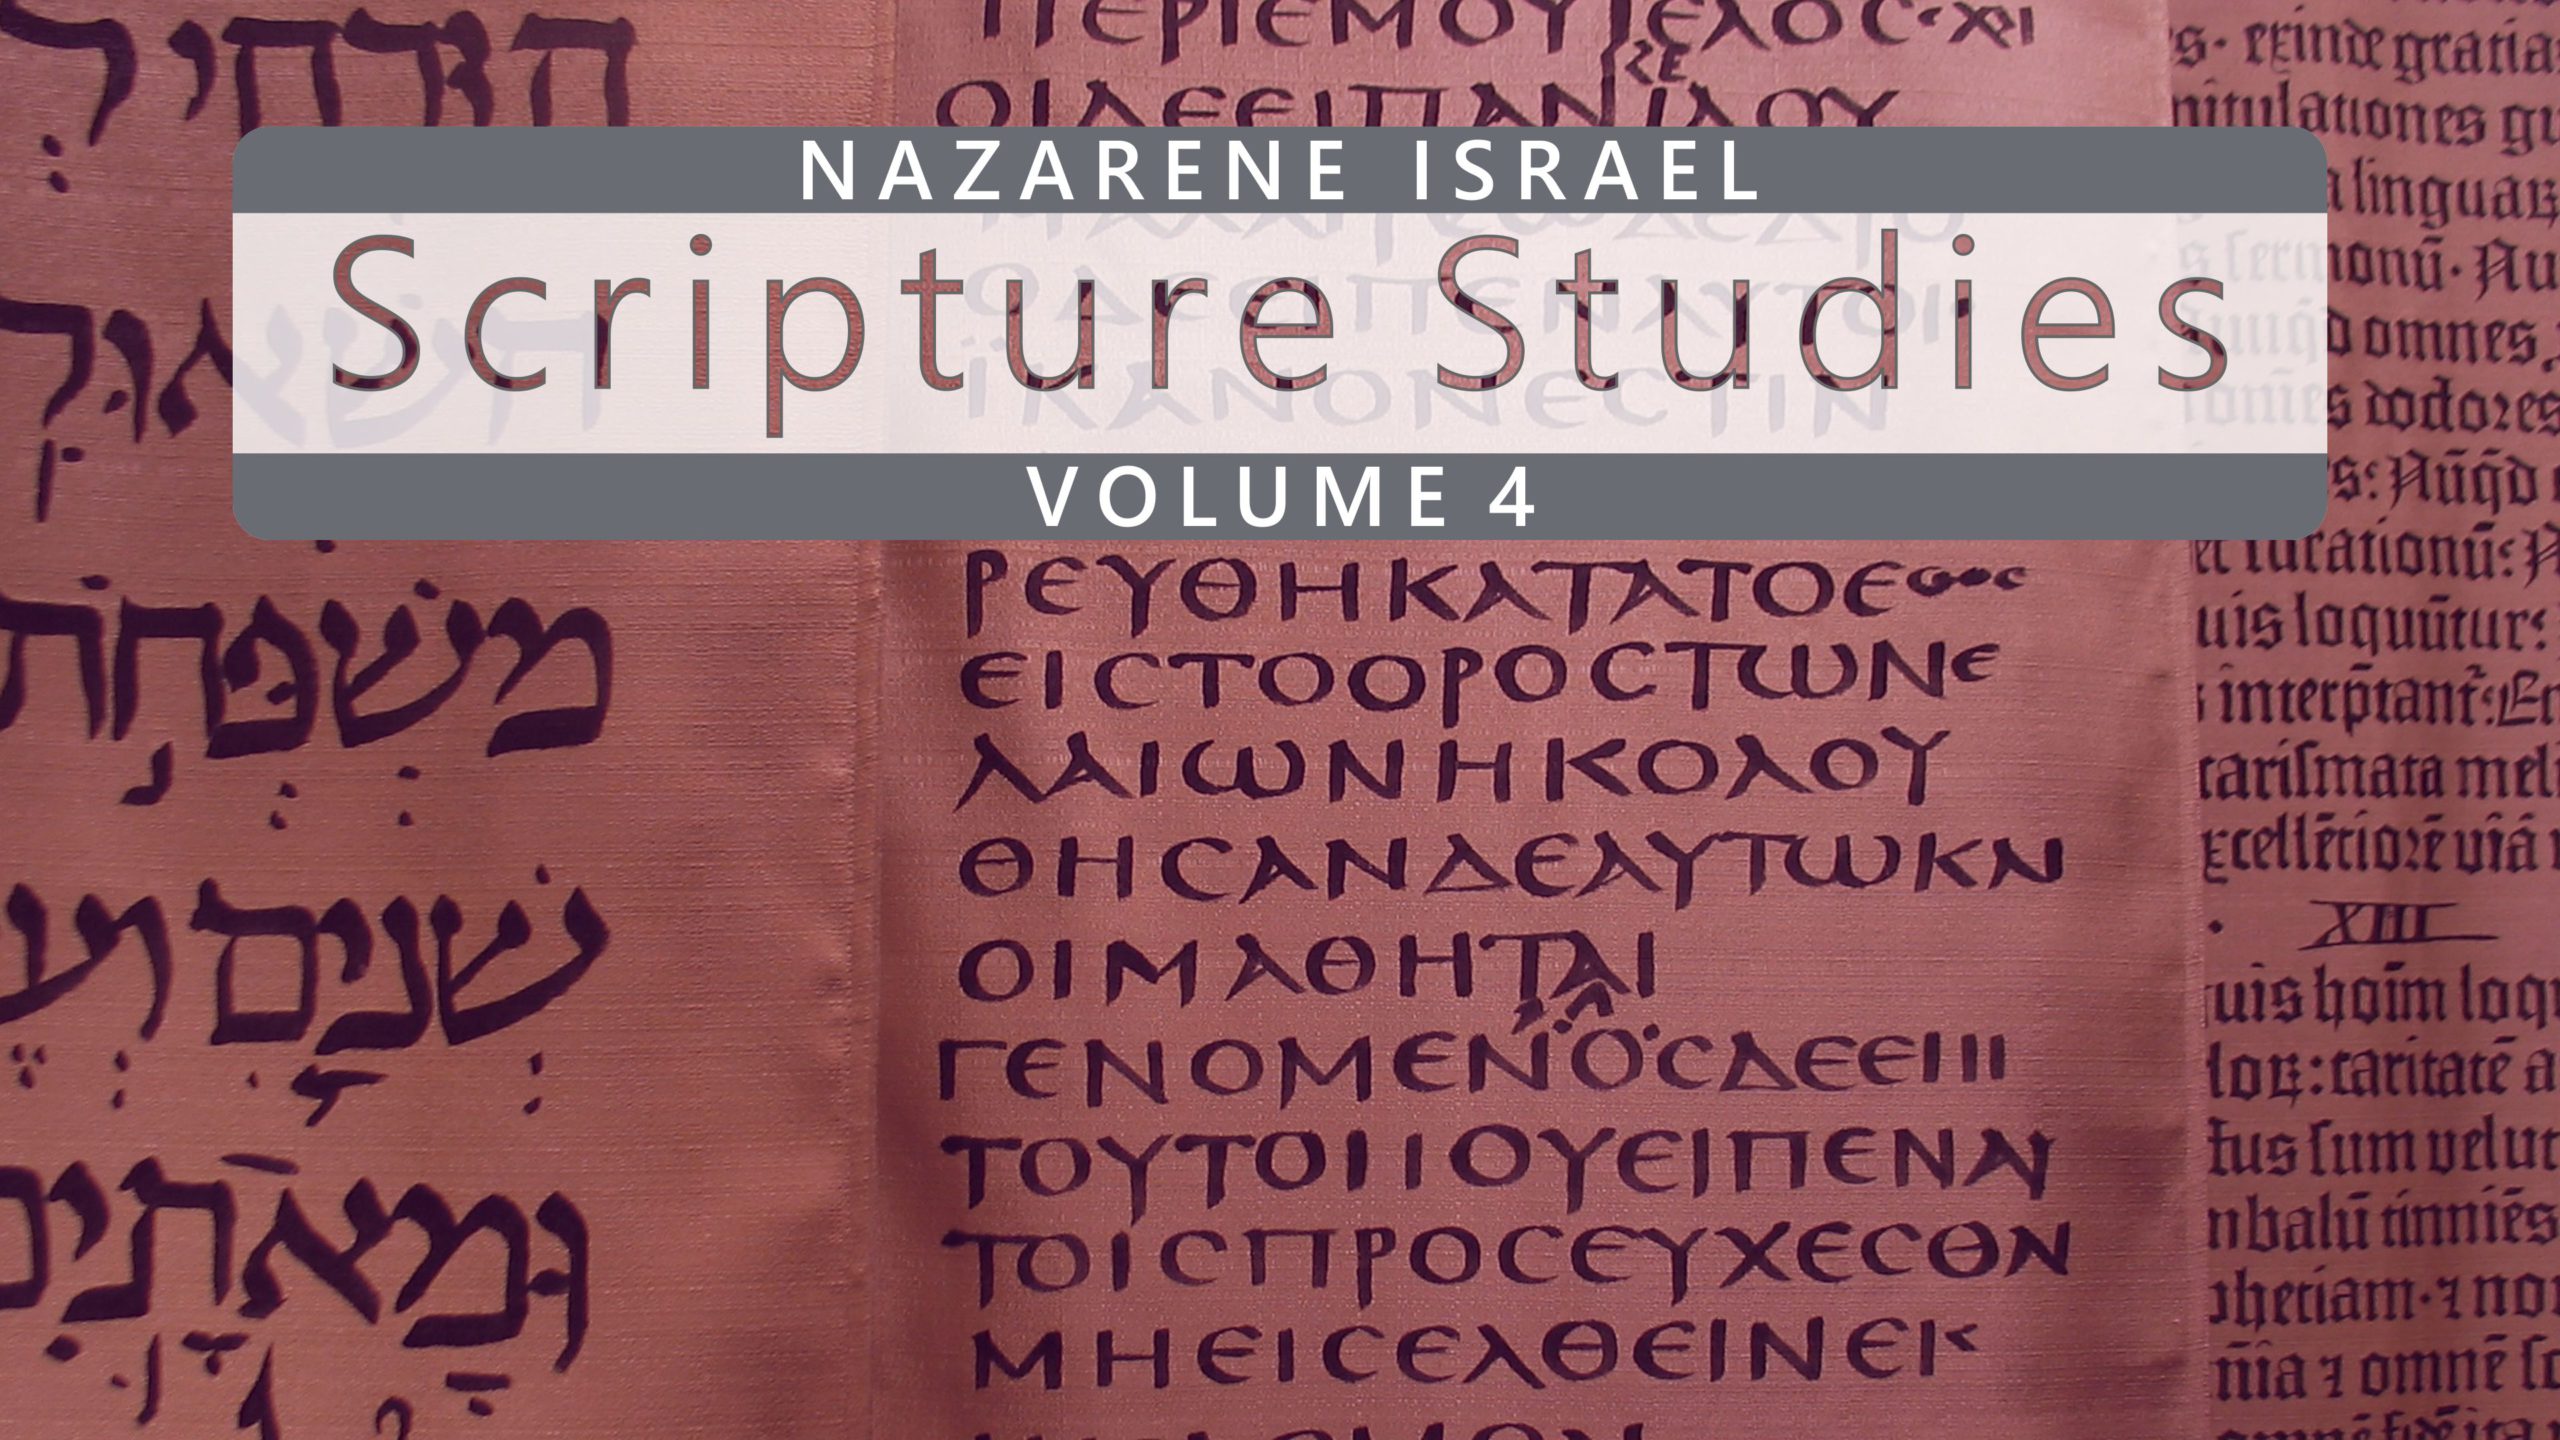 Nazarene Scripture Studies Vol. 4